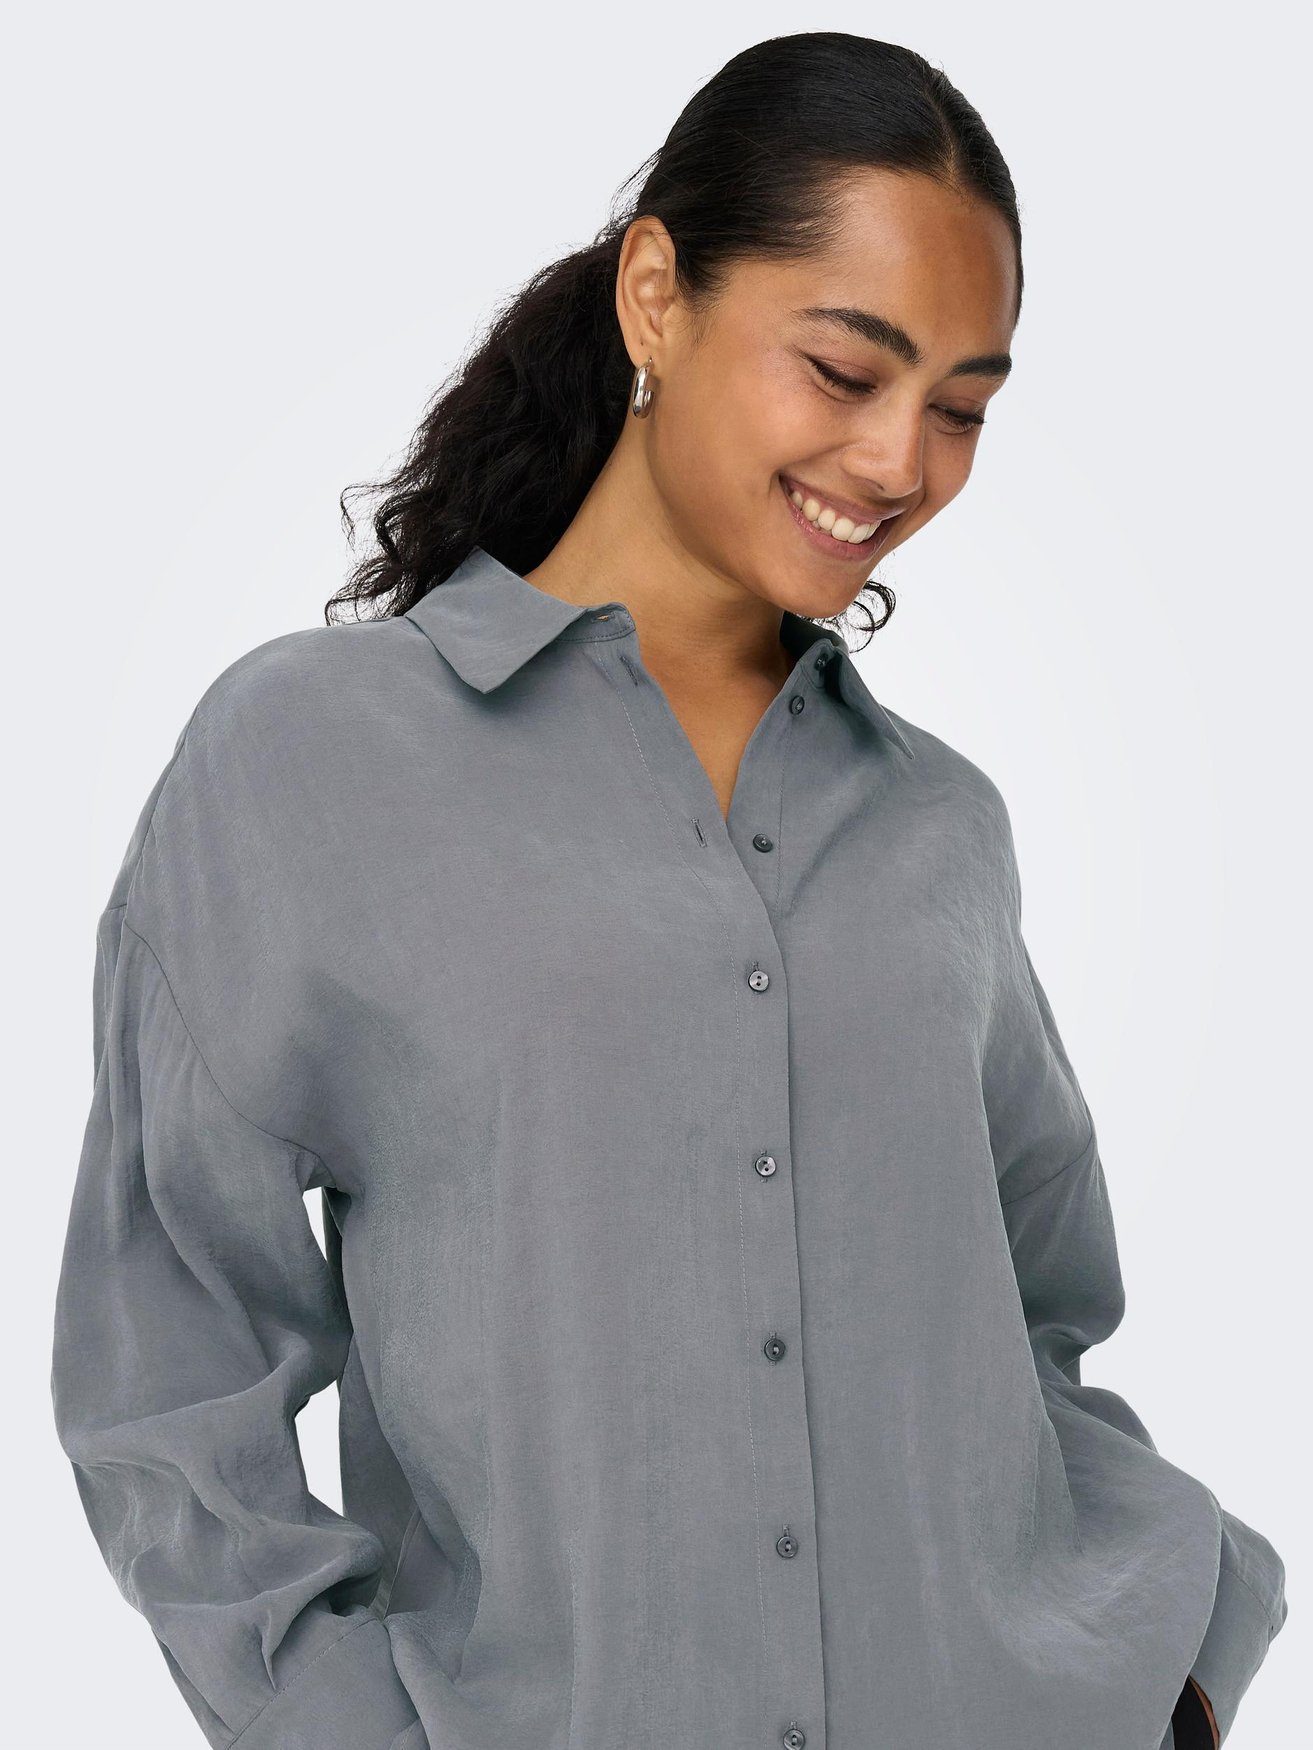 Blusenshirt ONLIRIS Grau Shirt Langarm in Bluse Weites Hemd Oversize 5635 ONLY